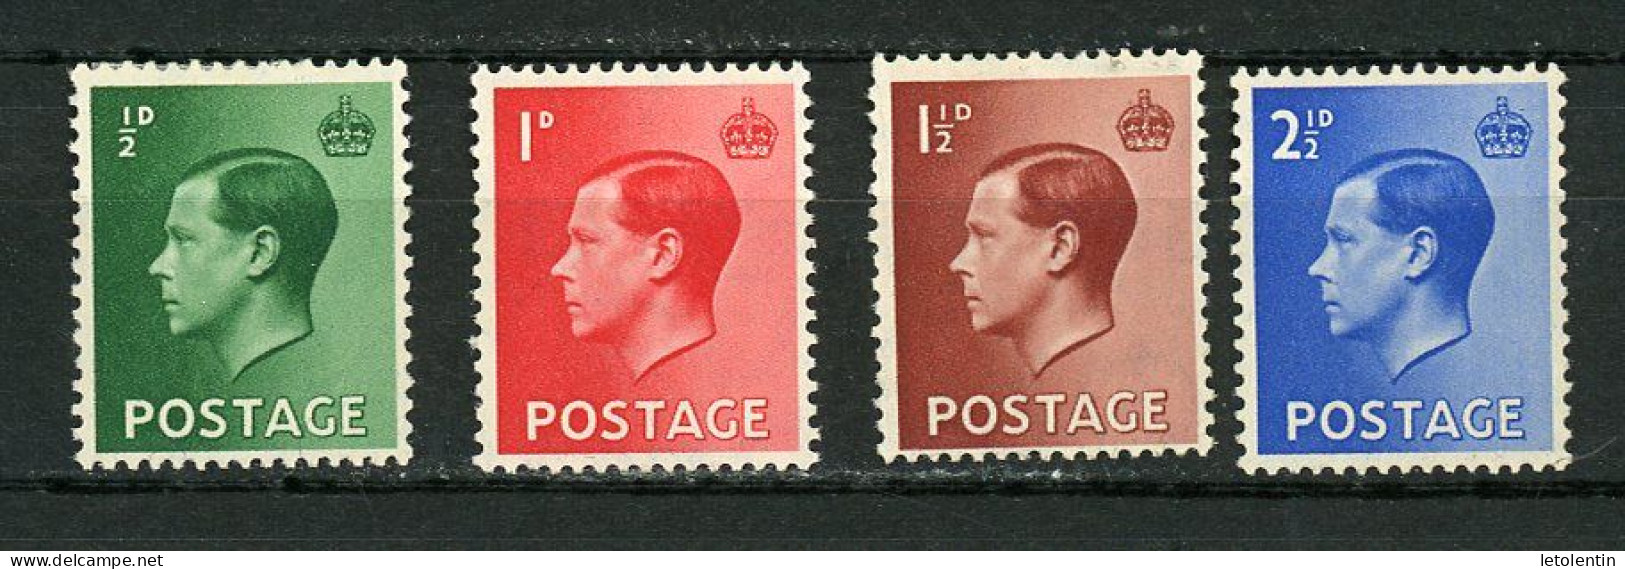 GRANDE BRETAGNE - EDOUARD VIII -    N° Yt 205/208 * - Unused Stamps